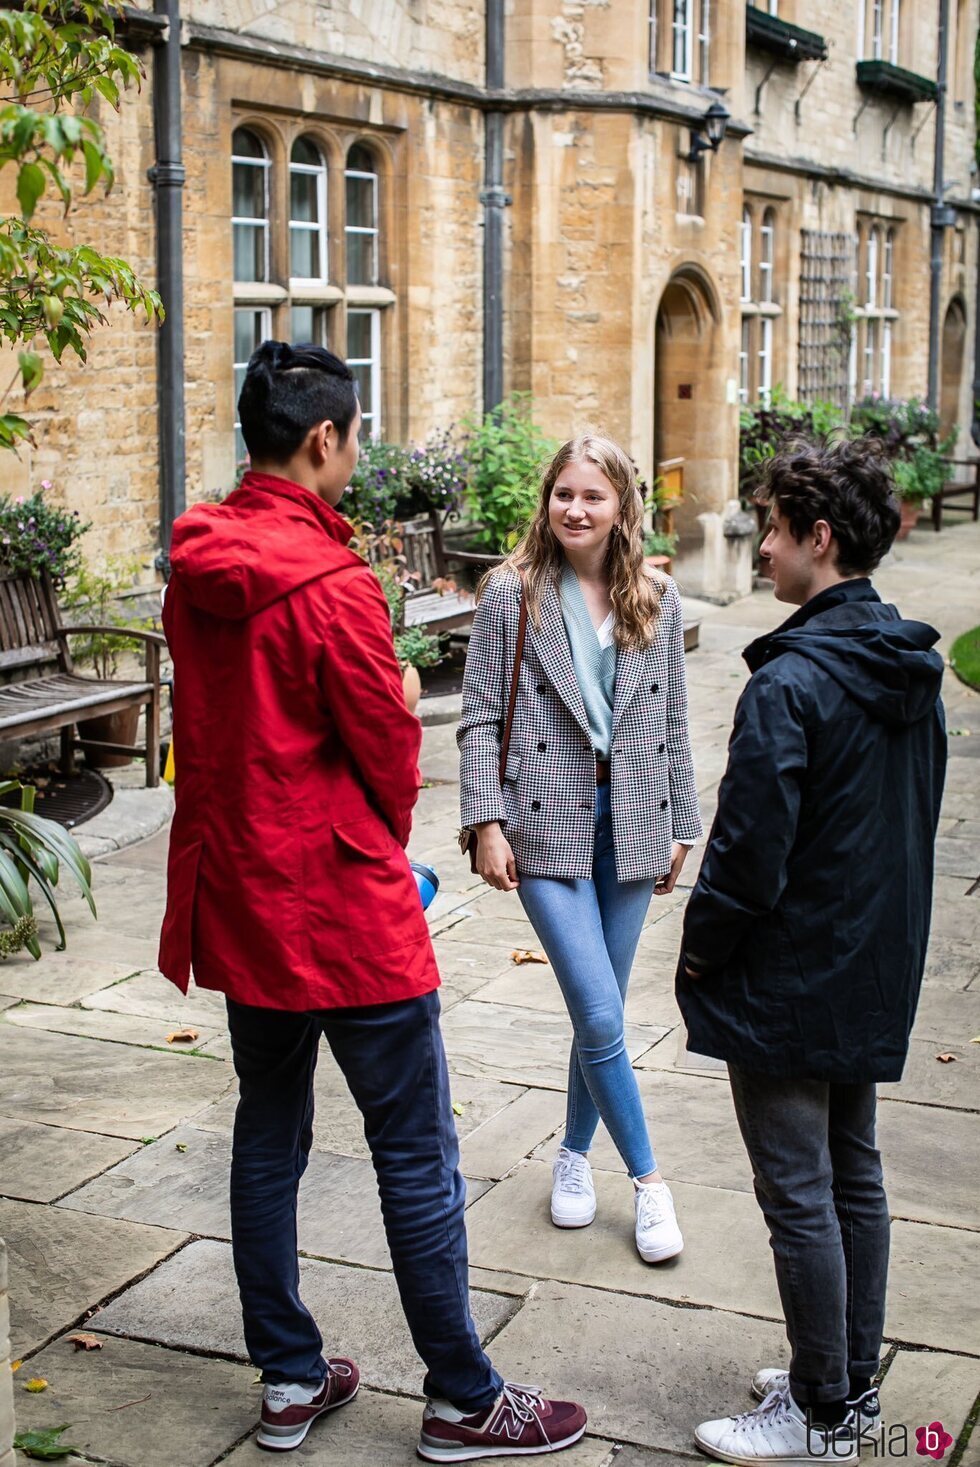 Isabel de Bélgica habla con dos chicos en el Lincoln College Oxford